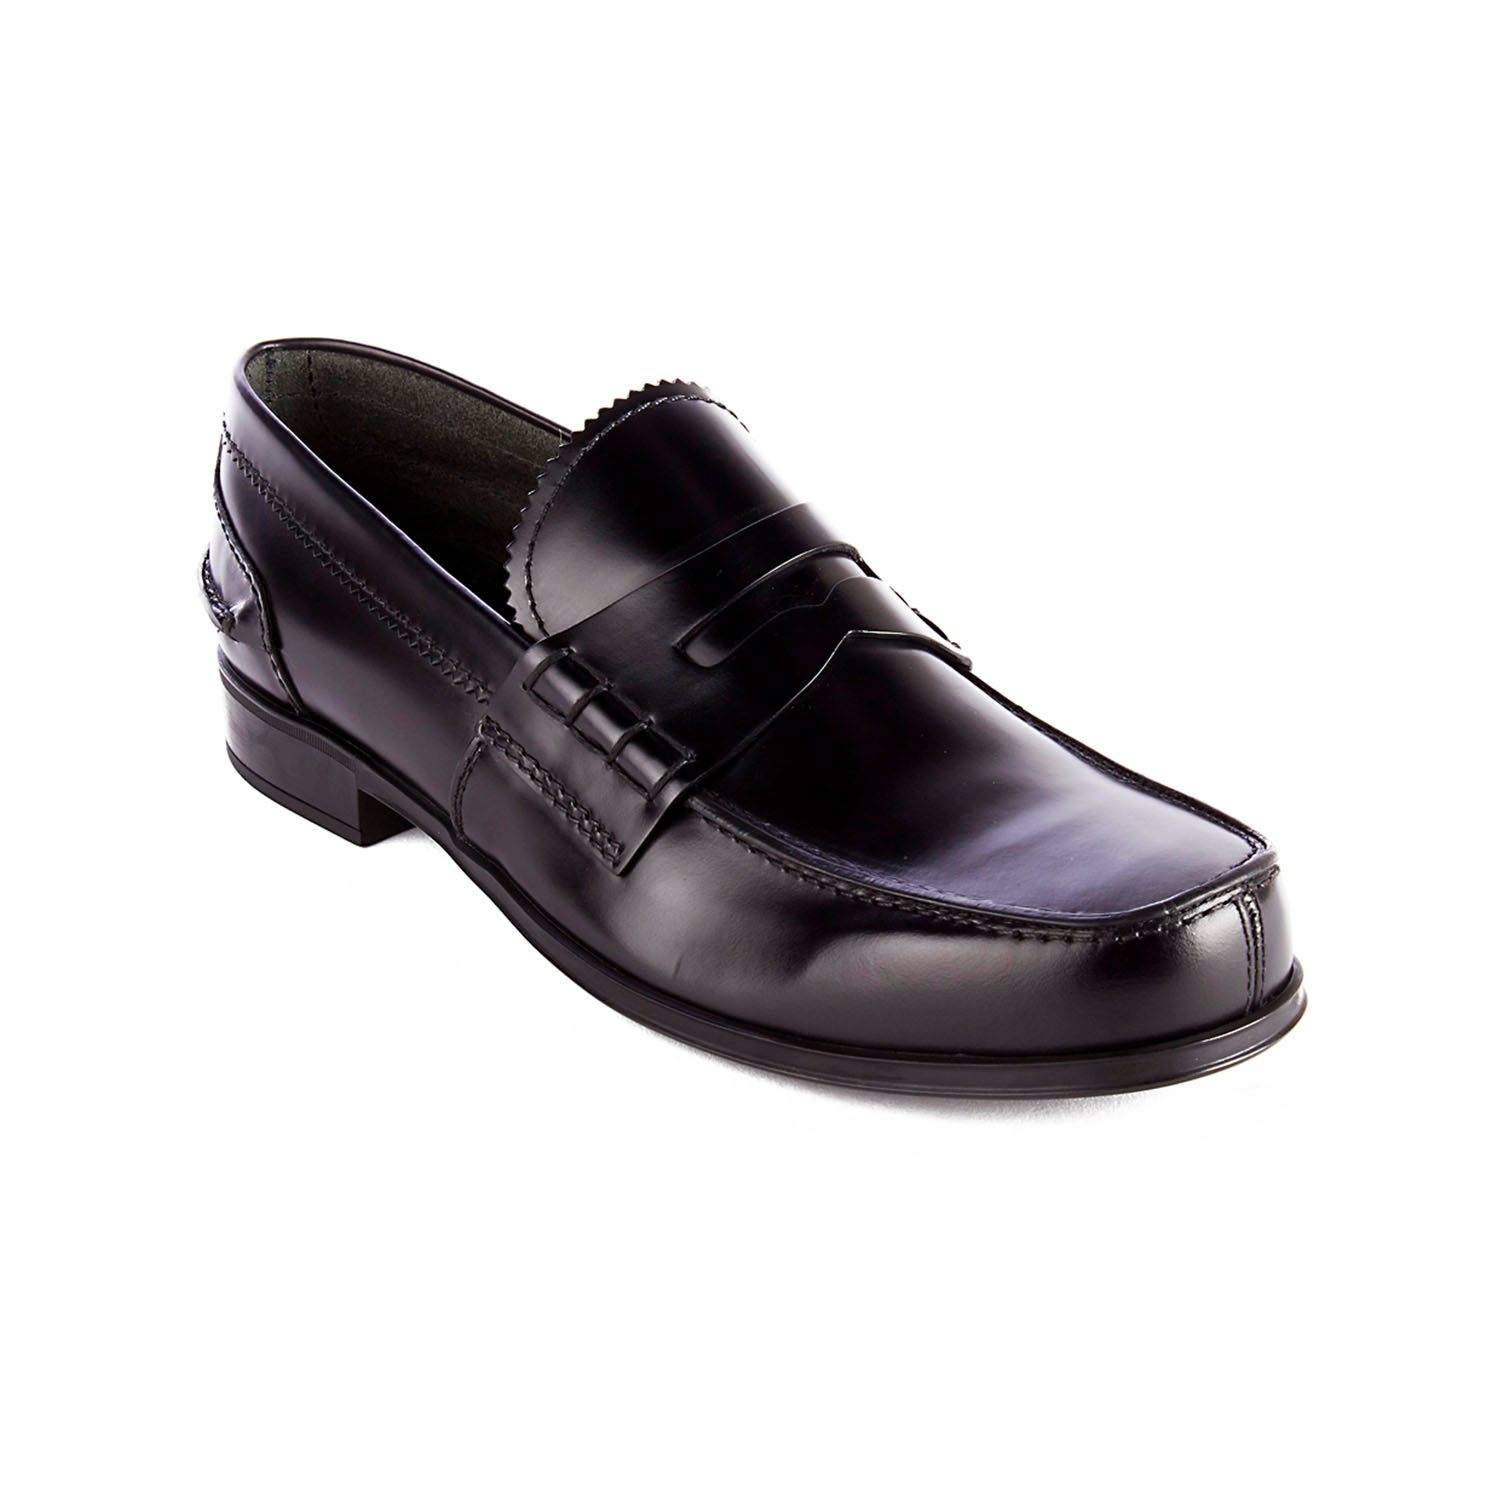 Prada // Brushed Leather Moccasin Loafer Shoes // Black (US: 8) - Men's ...